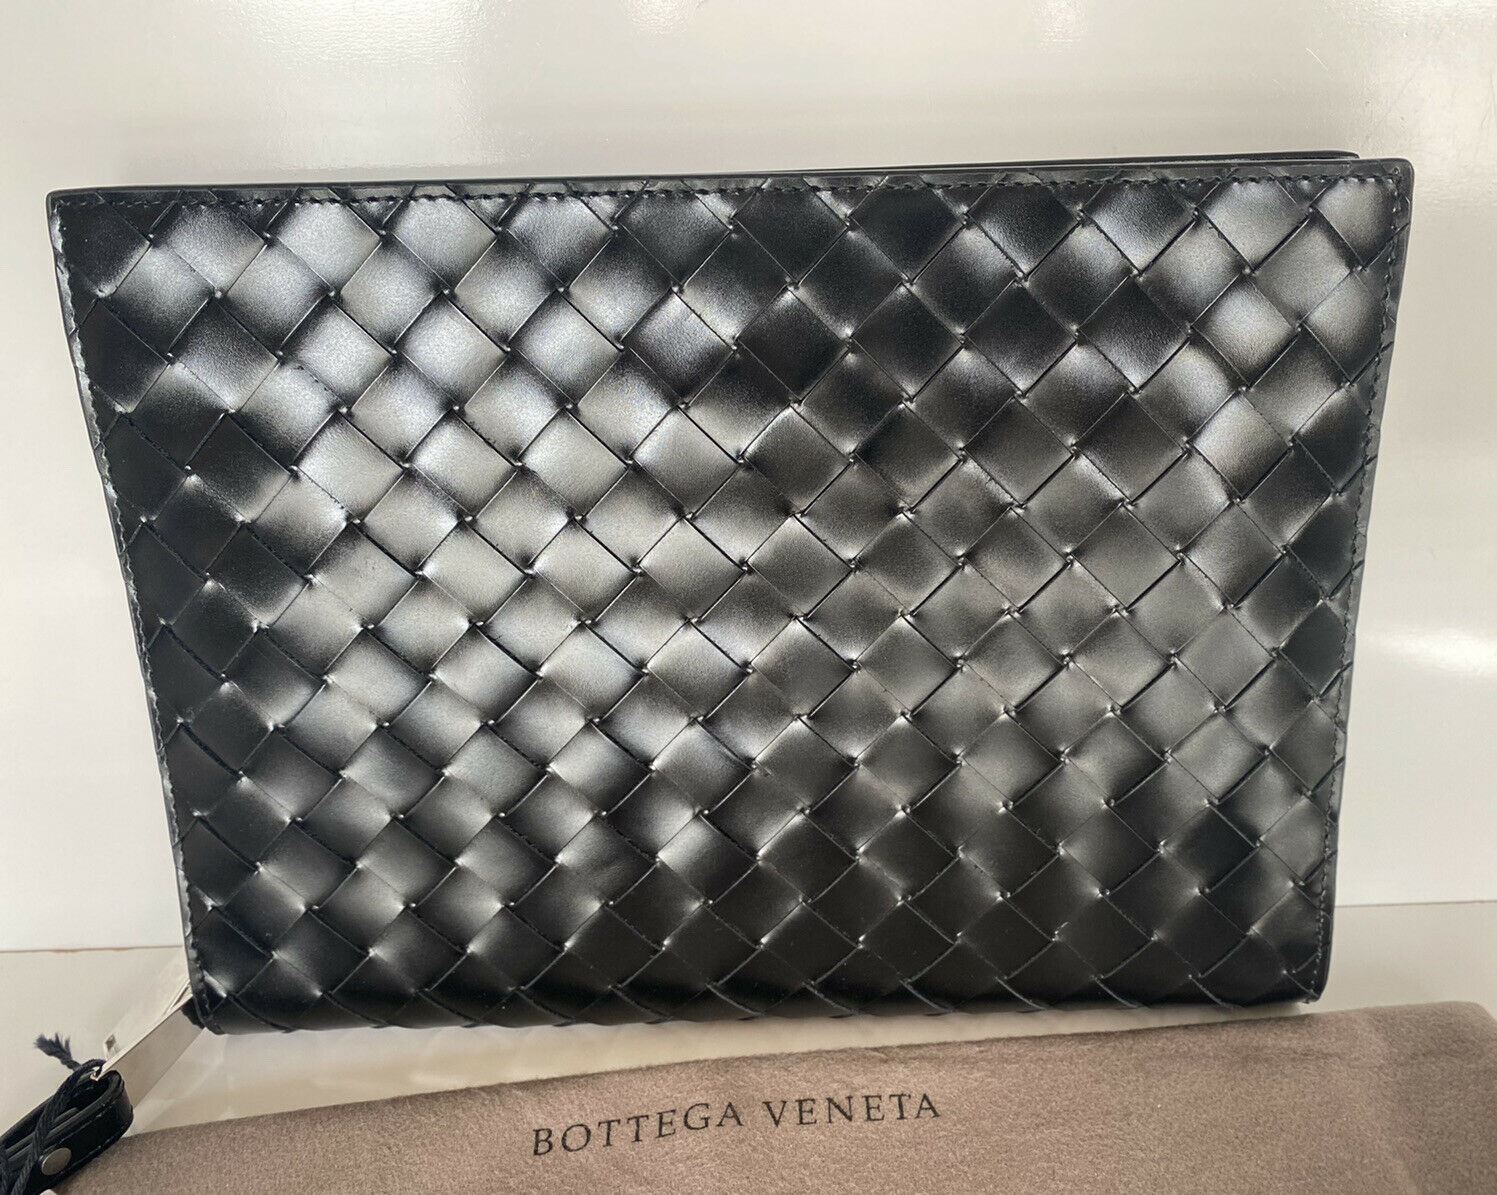 Neu mit Etikett: 1650 $ Bottega Veneta Intrecciato glänzendes Leder-Dokumentenetui Schwarz 592855 